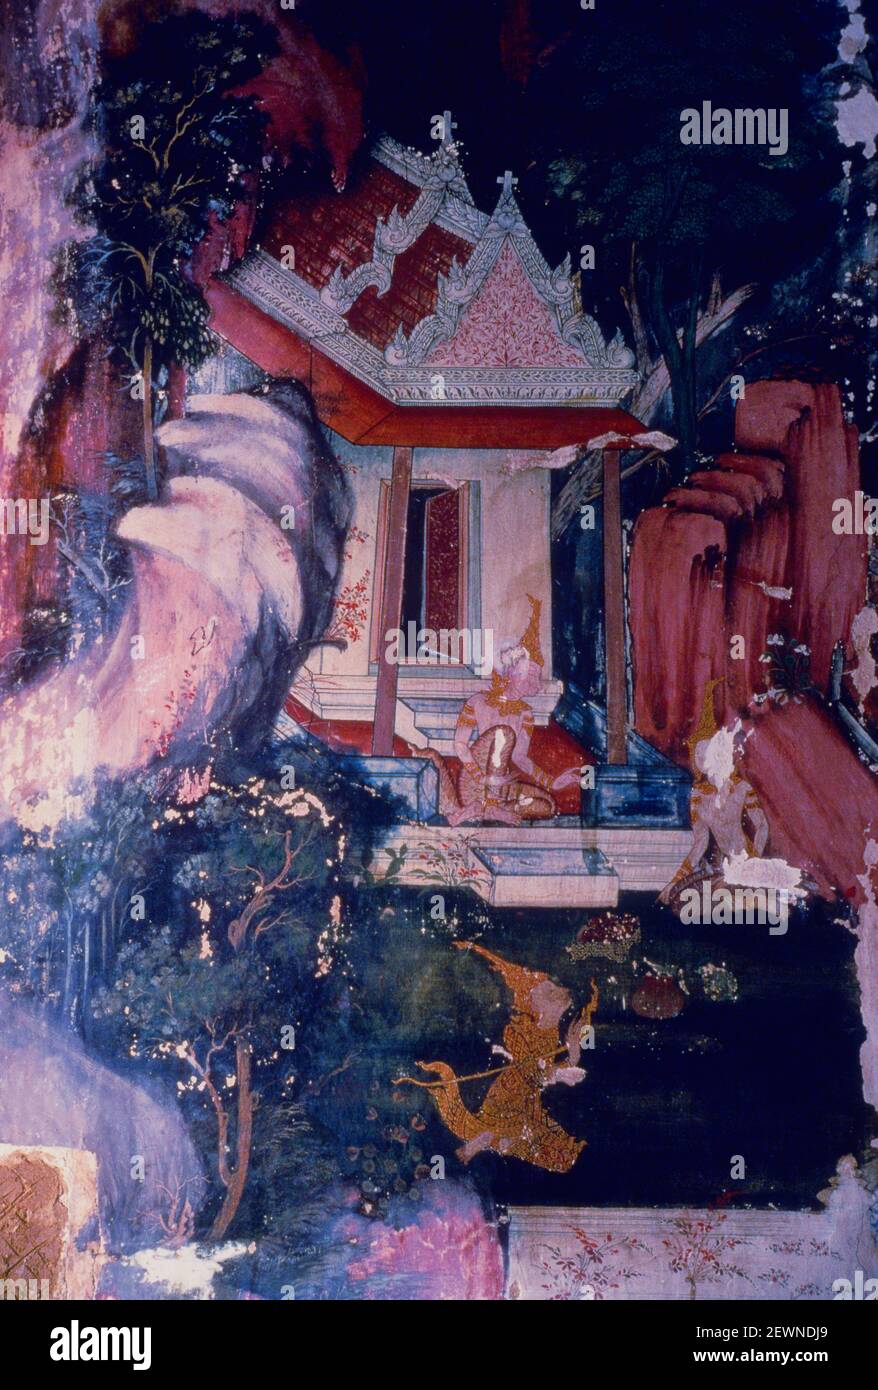 Le roi rémorseful retourne le pot d'eau de Sama à son parent aveugle à leur ermitage, Wat Suwannaram, mur du Nord, Thonburi, Bangkok, Thaïlande Banque D'Images